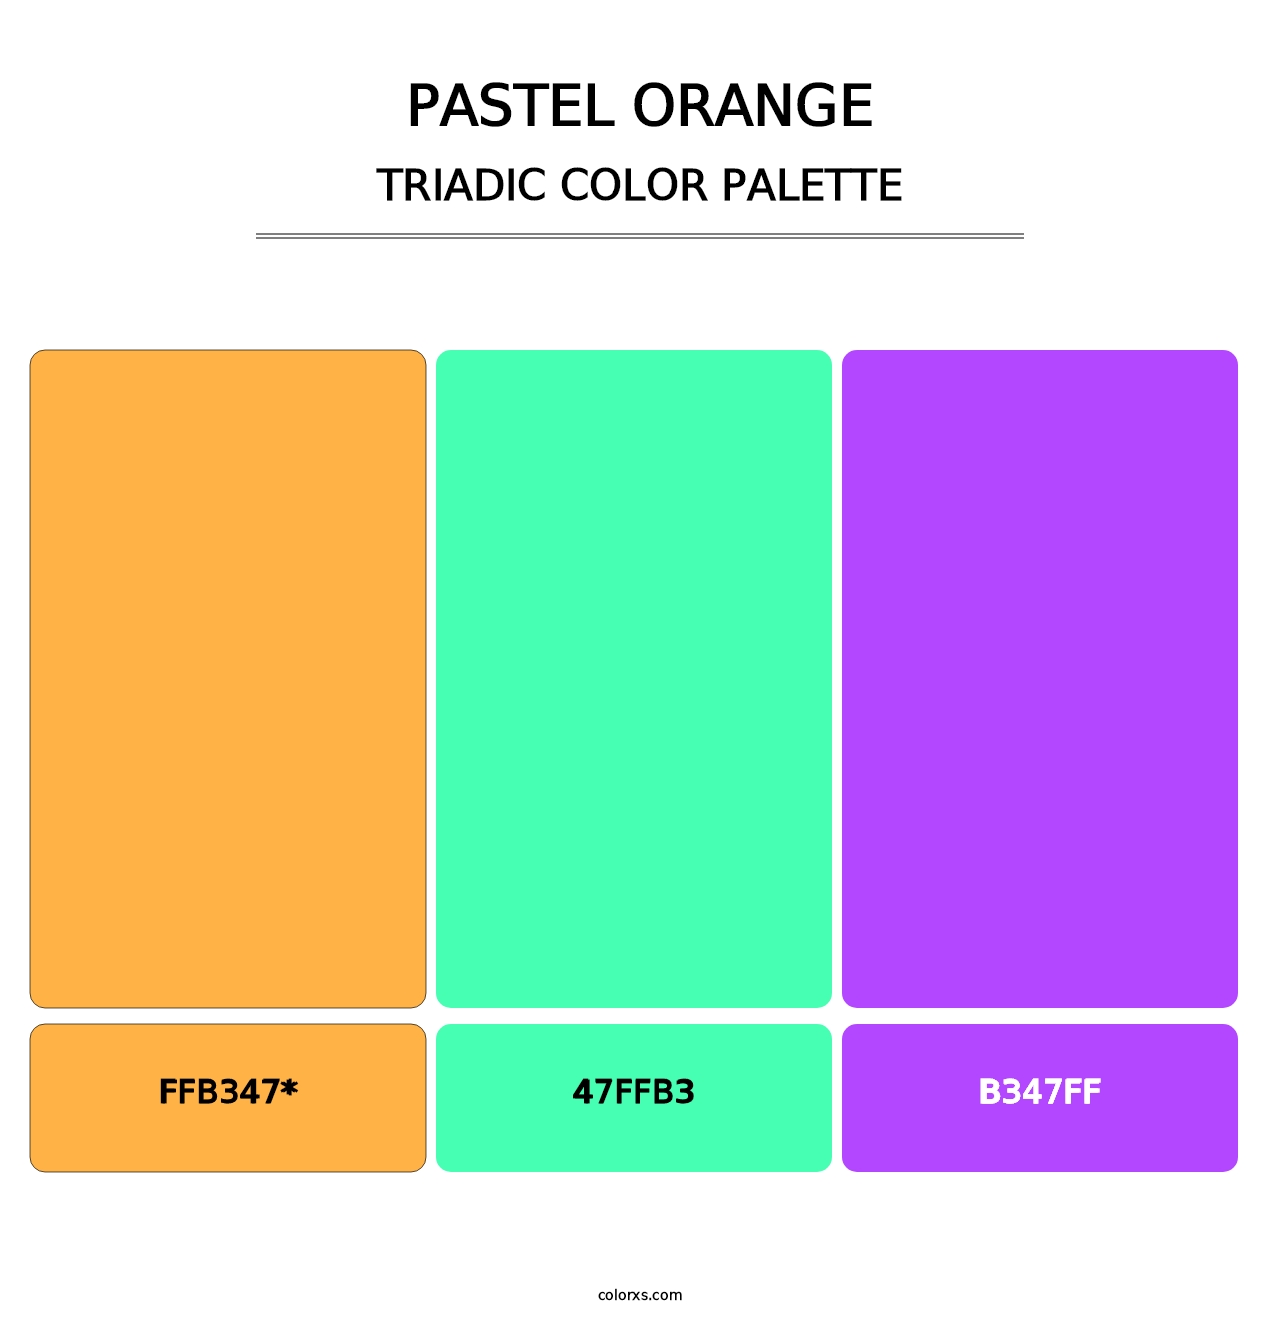 Pastel Orange - Triadic Color Palette